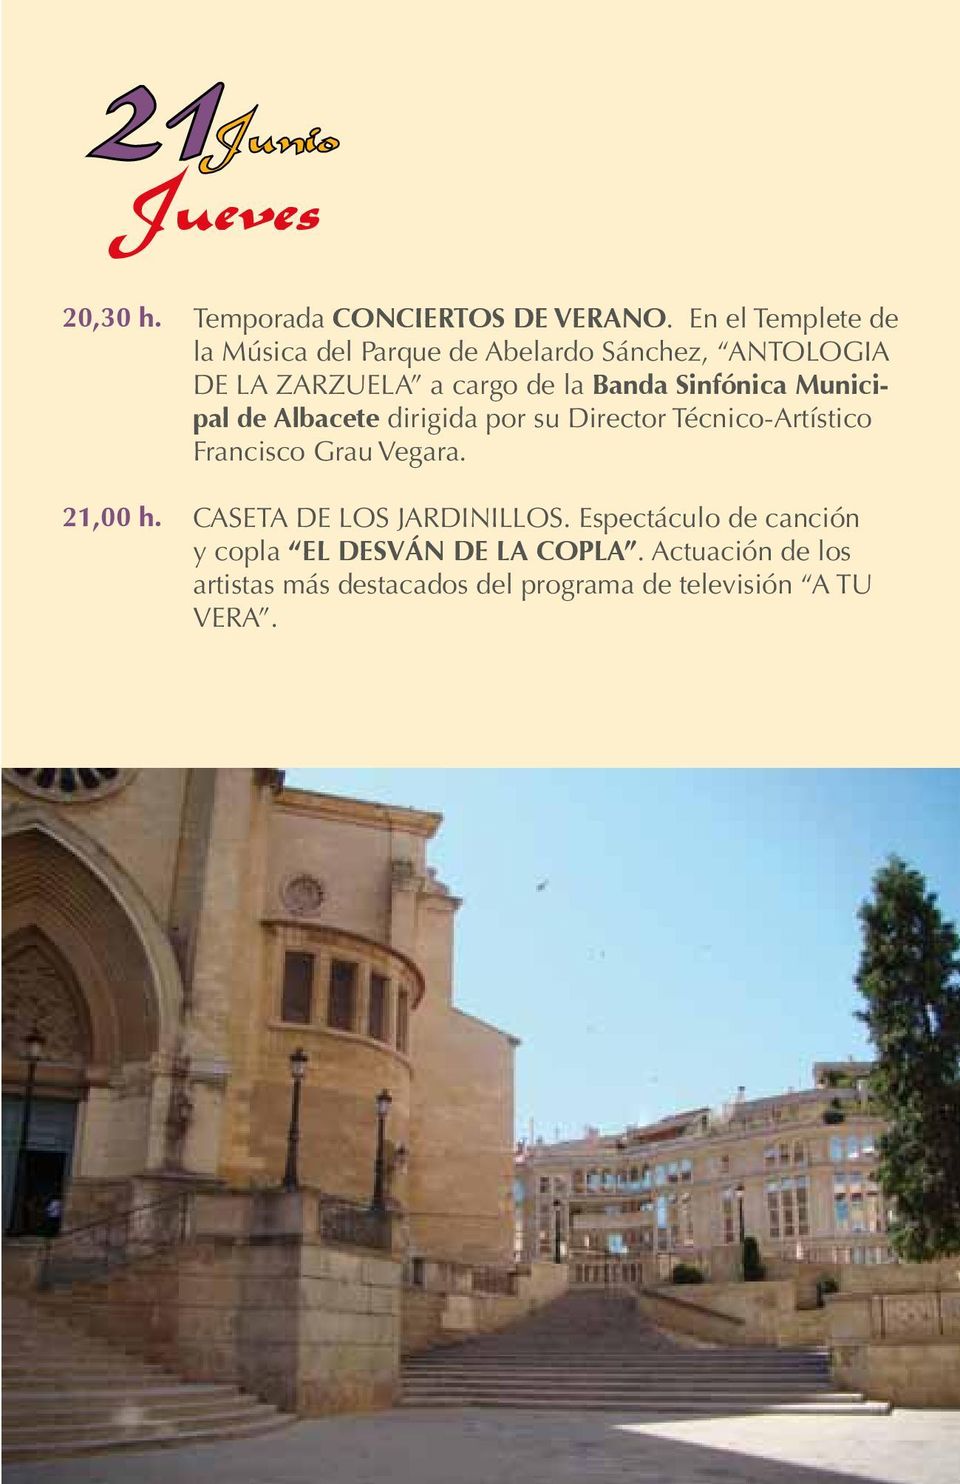 Sinfónica Municipal de Albacete dirigida por su Director Técnico-Artístico Francisco Grau Vegara.